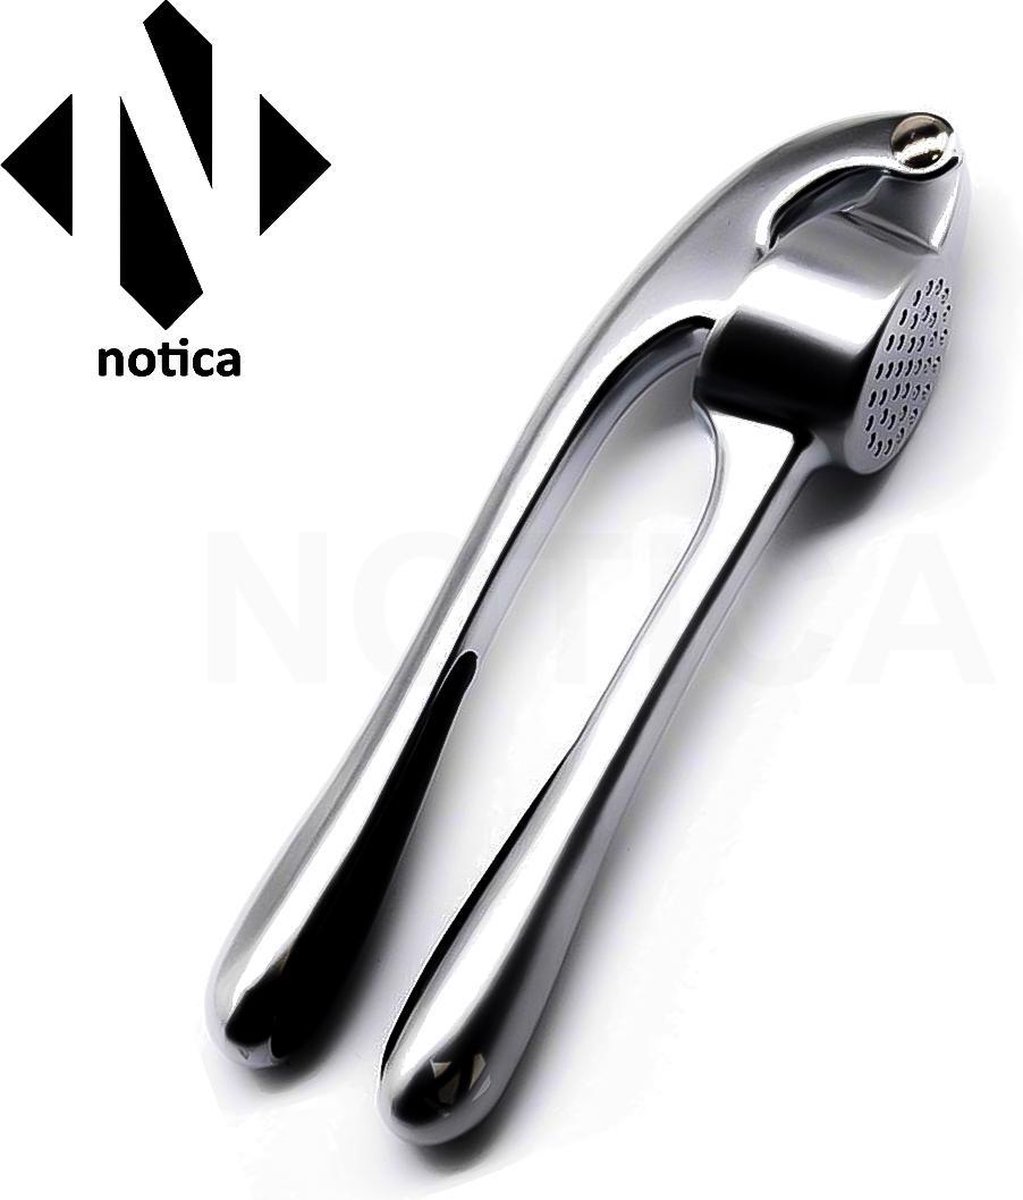 Notica - Stevige Premium Knoflookpers - Roestvrijstaal - Premium kwaliteit - RVS knoflookpers - Knoflook - Pers - Handpers - Lookpers - Gember pers - Notica